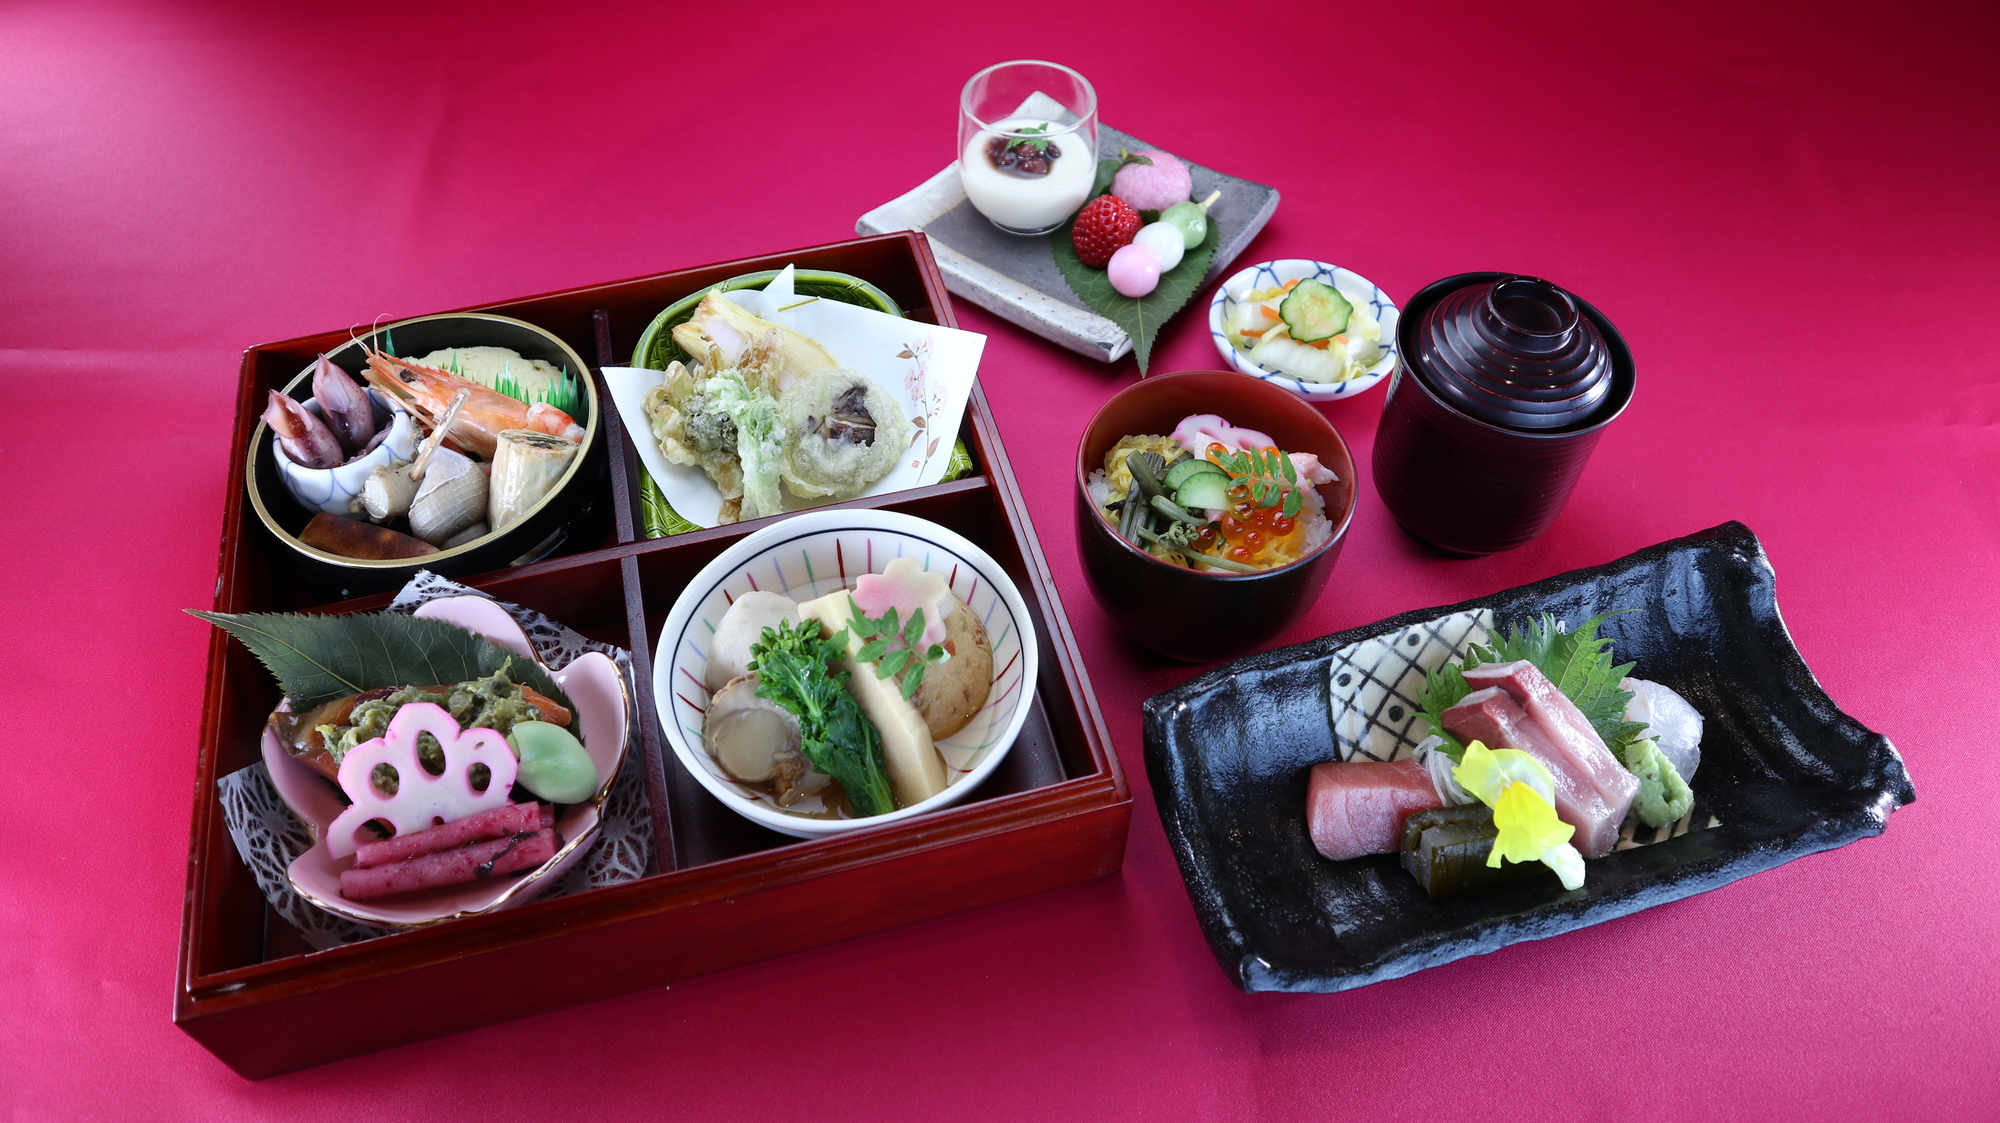 お品書き 昼メニュー 富山市で和食 日本料理の居酒屋なら きせつ料理 なるみ